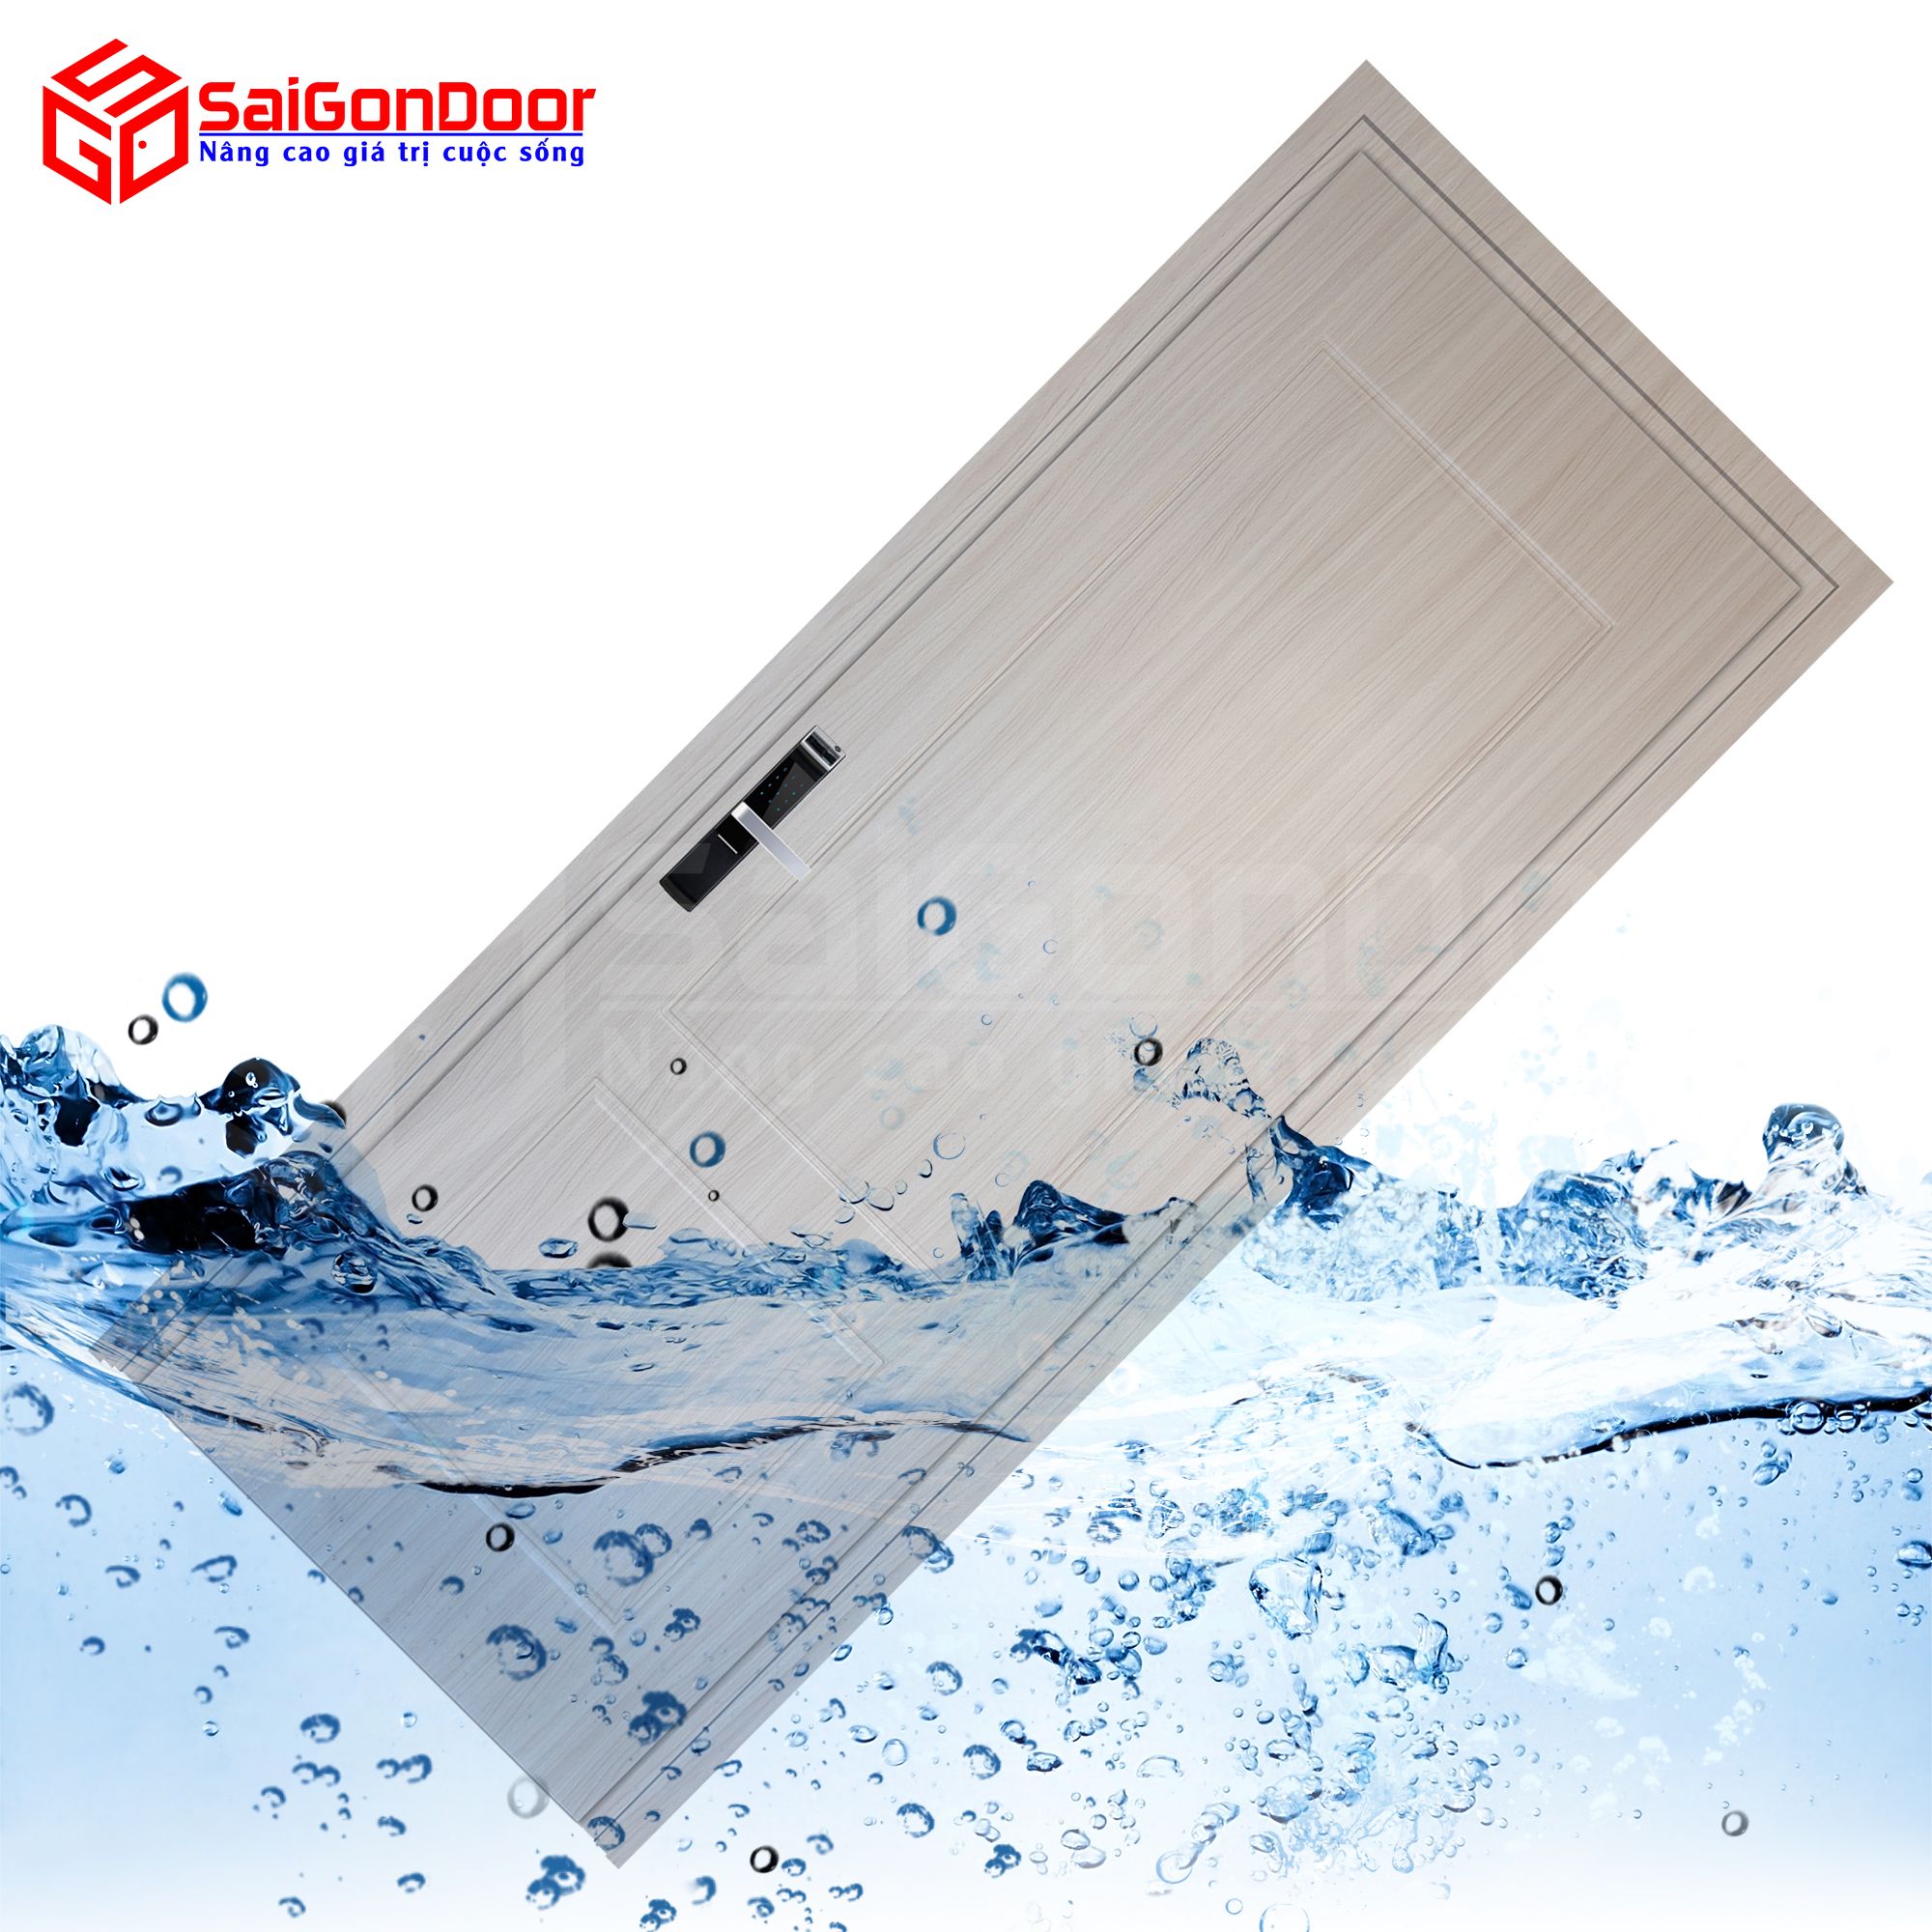 SaiGonDoor cung cấp các mẫu cửa nhựa gỗ giá rẻ và chất lượng